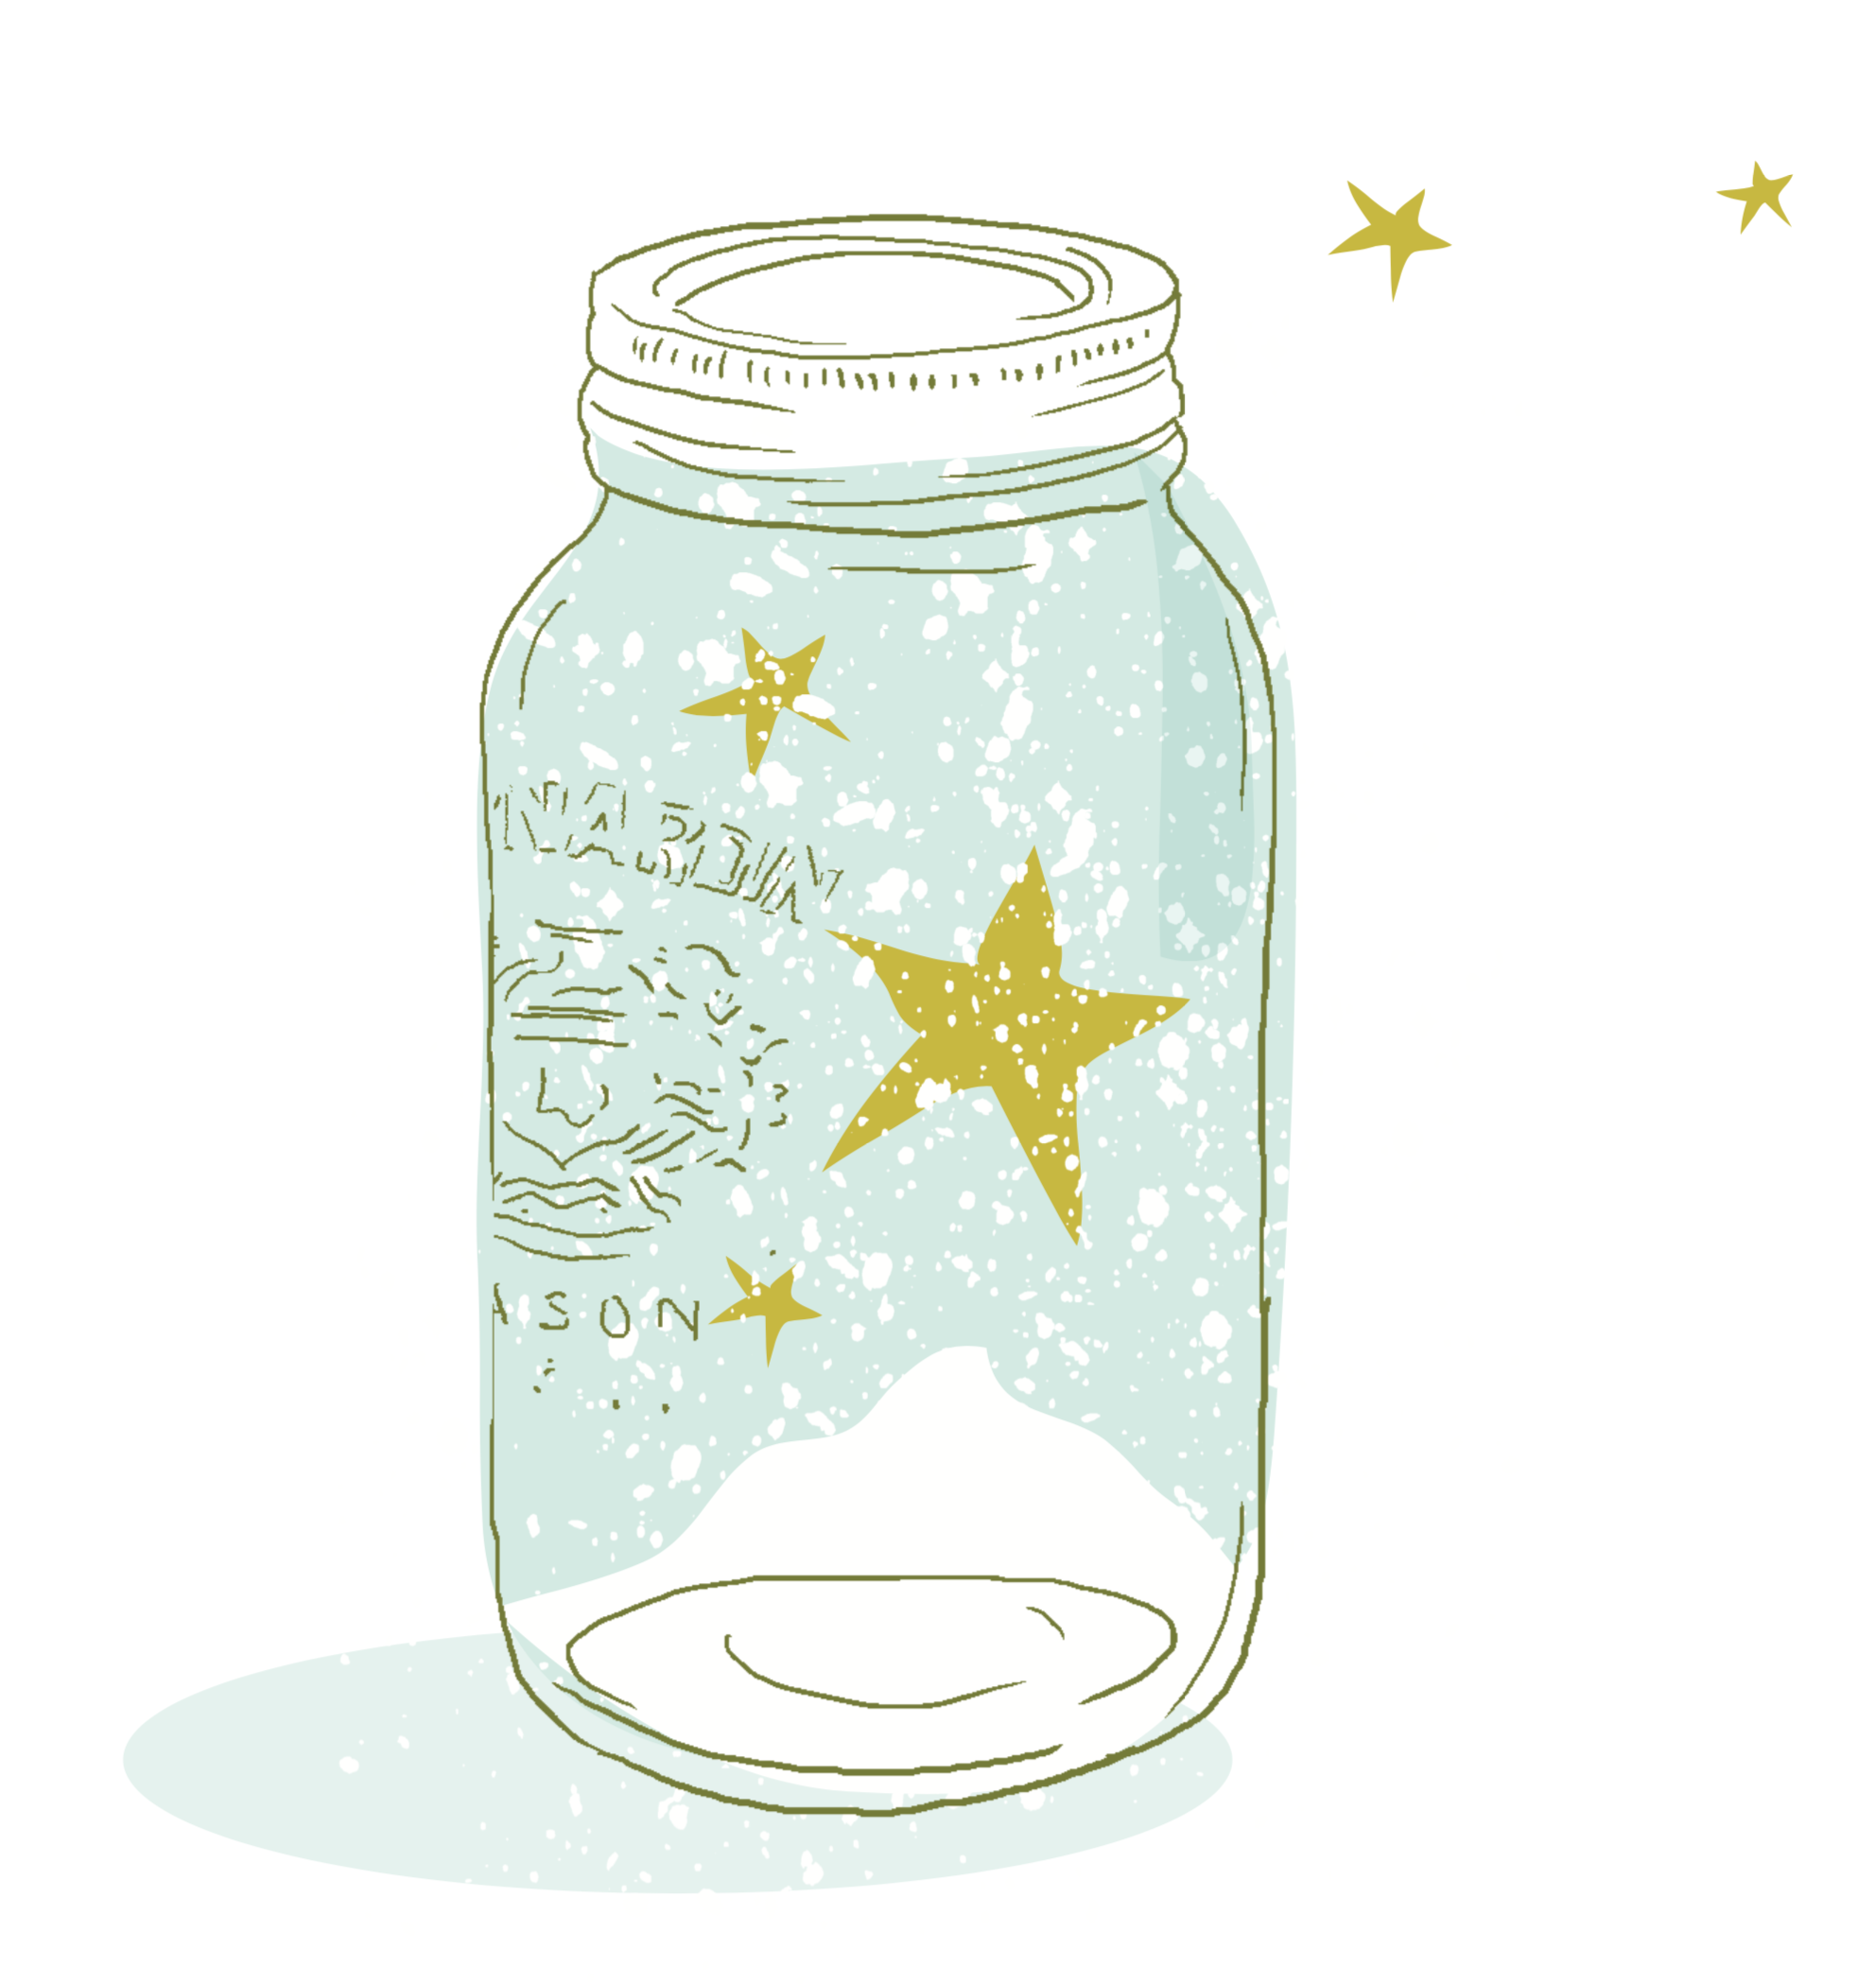 Illustration d’un pot en verre avec de la neige et des étoiles jaunes dedans et autour.